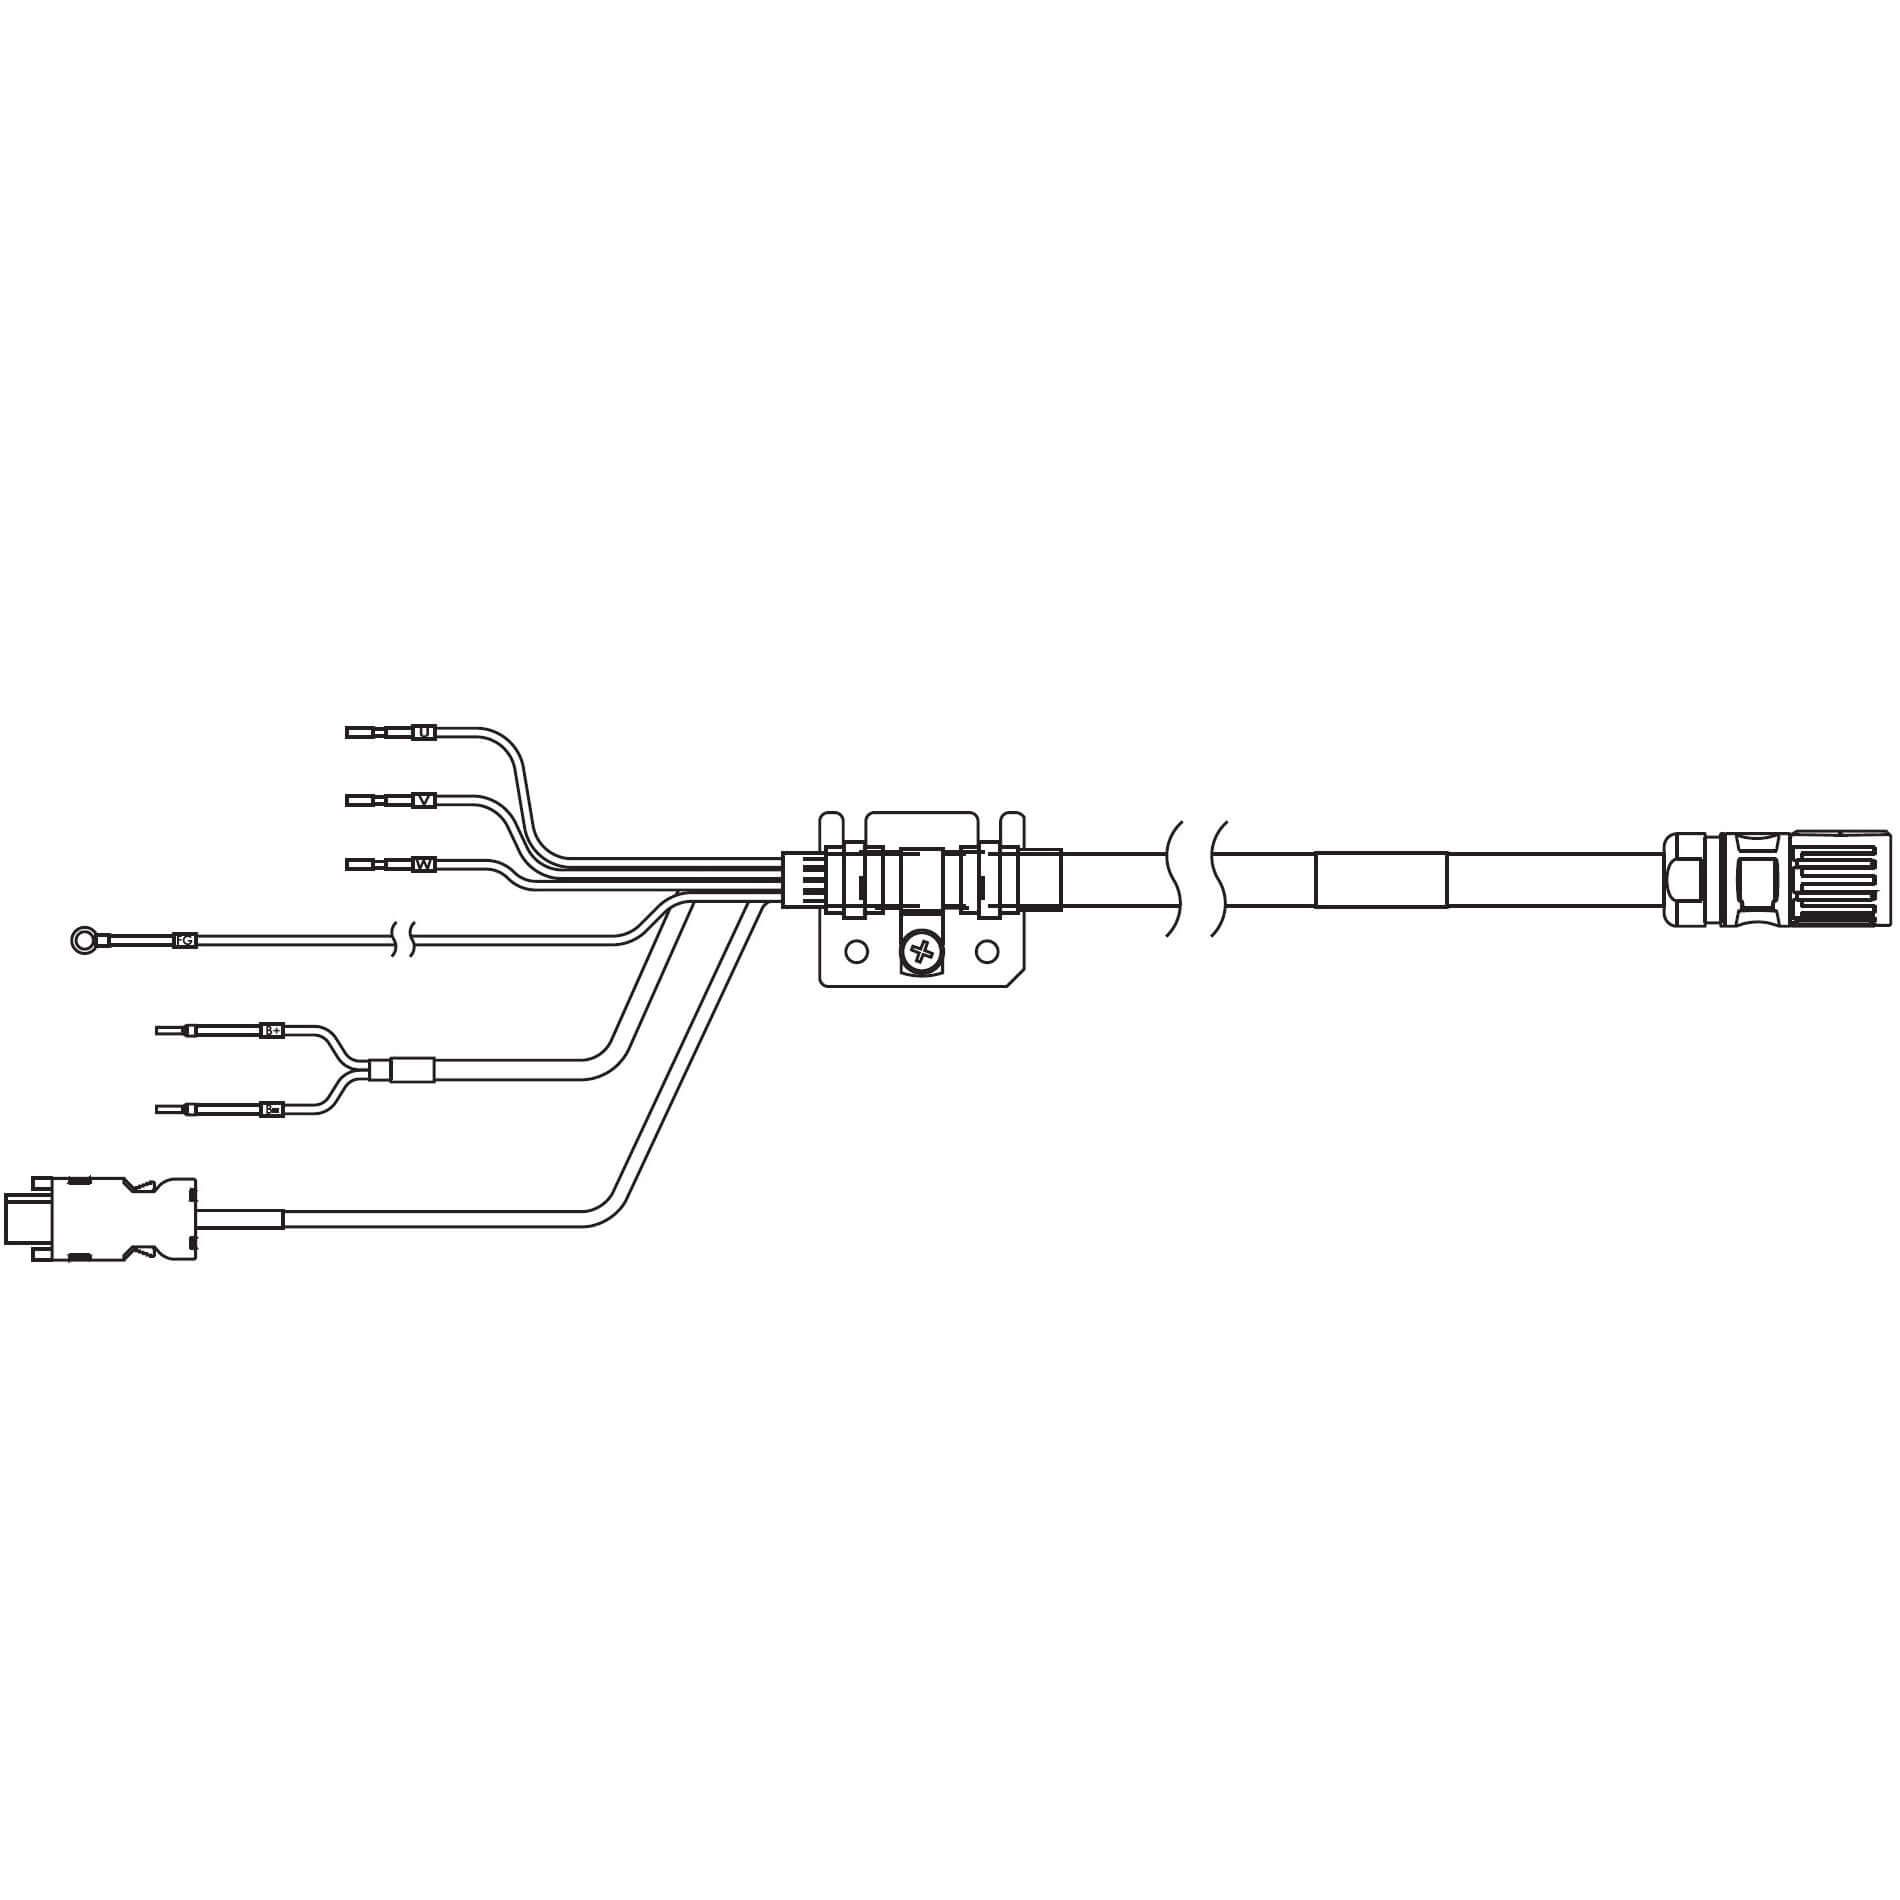 1S-Servomotor mit Safe Motion, Integrierte Kabel R88A-CX1A010BF